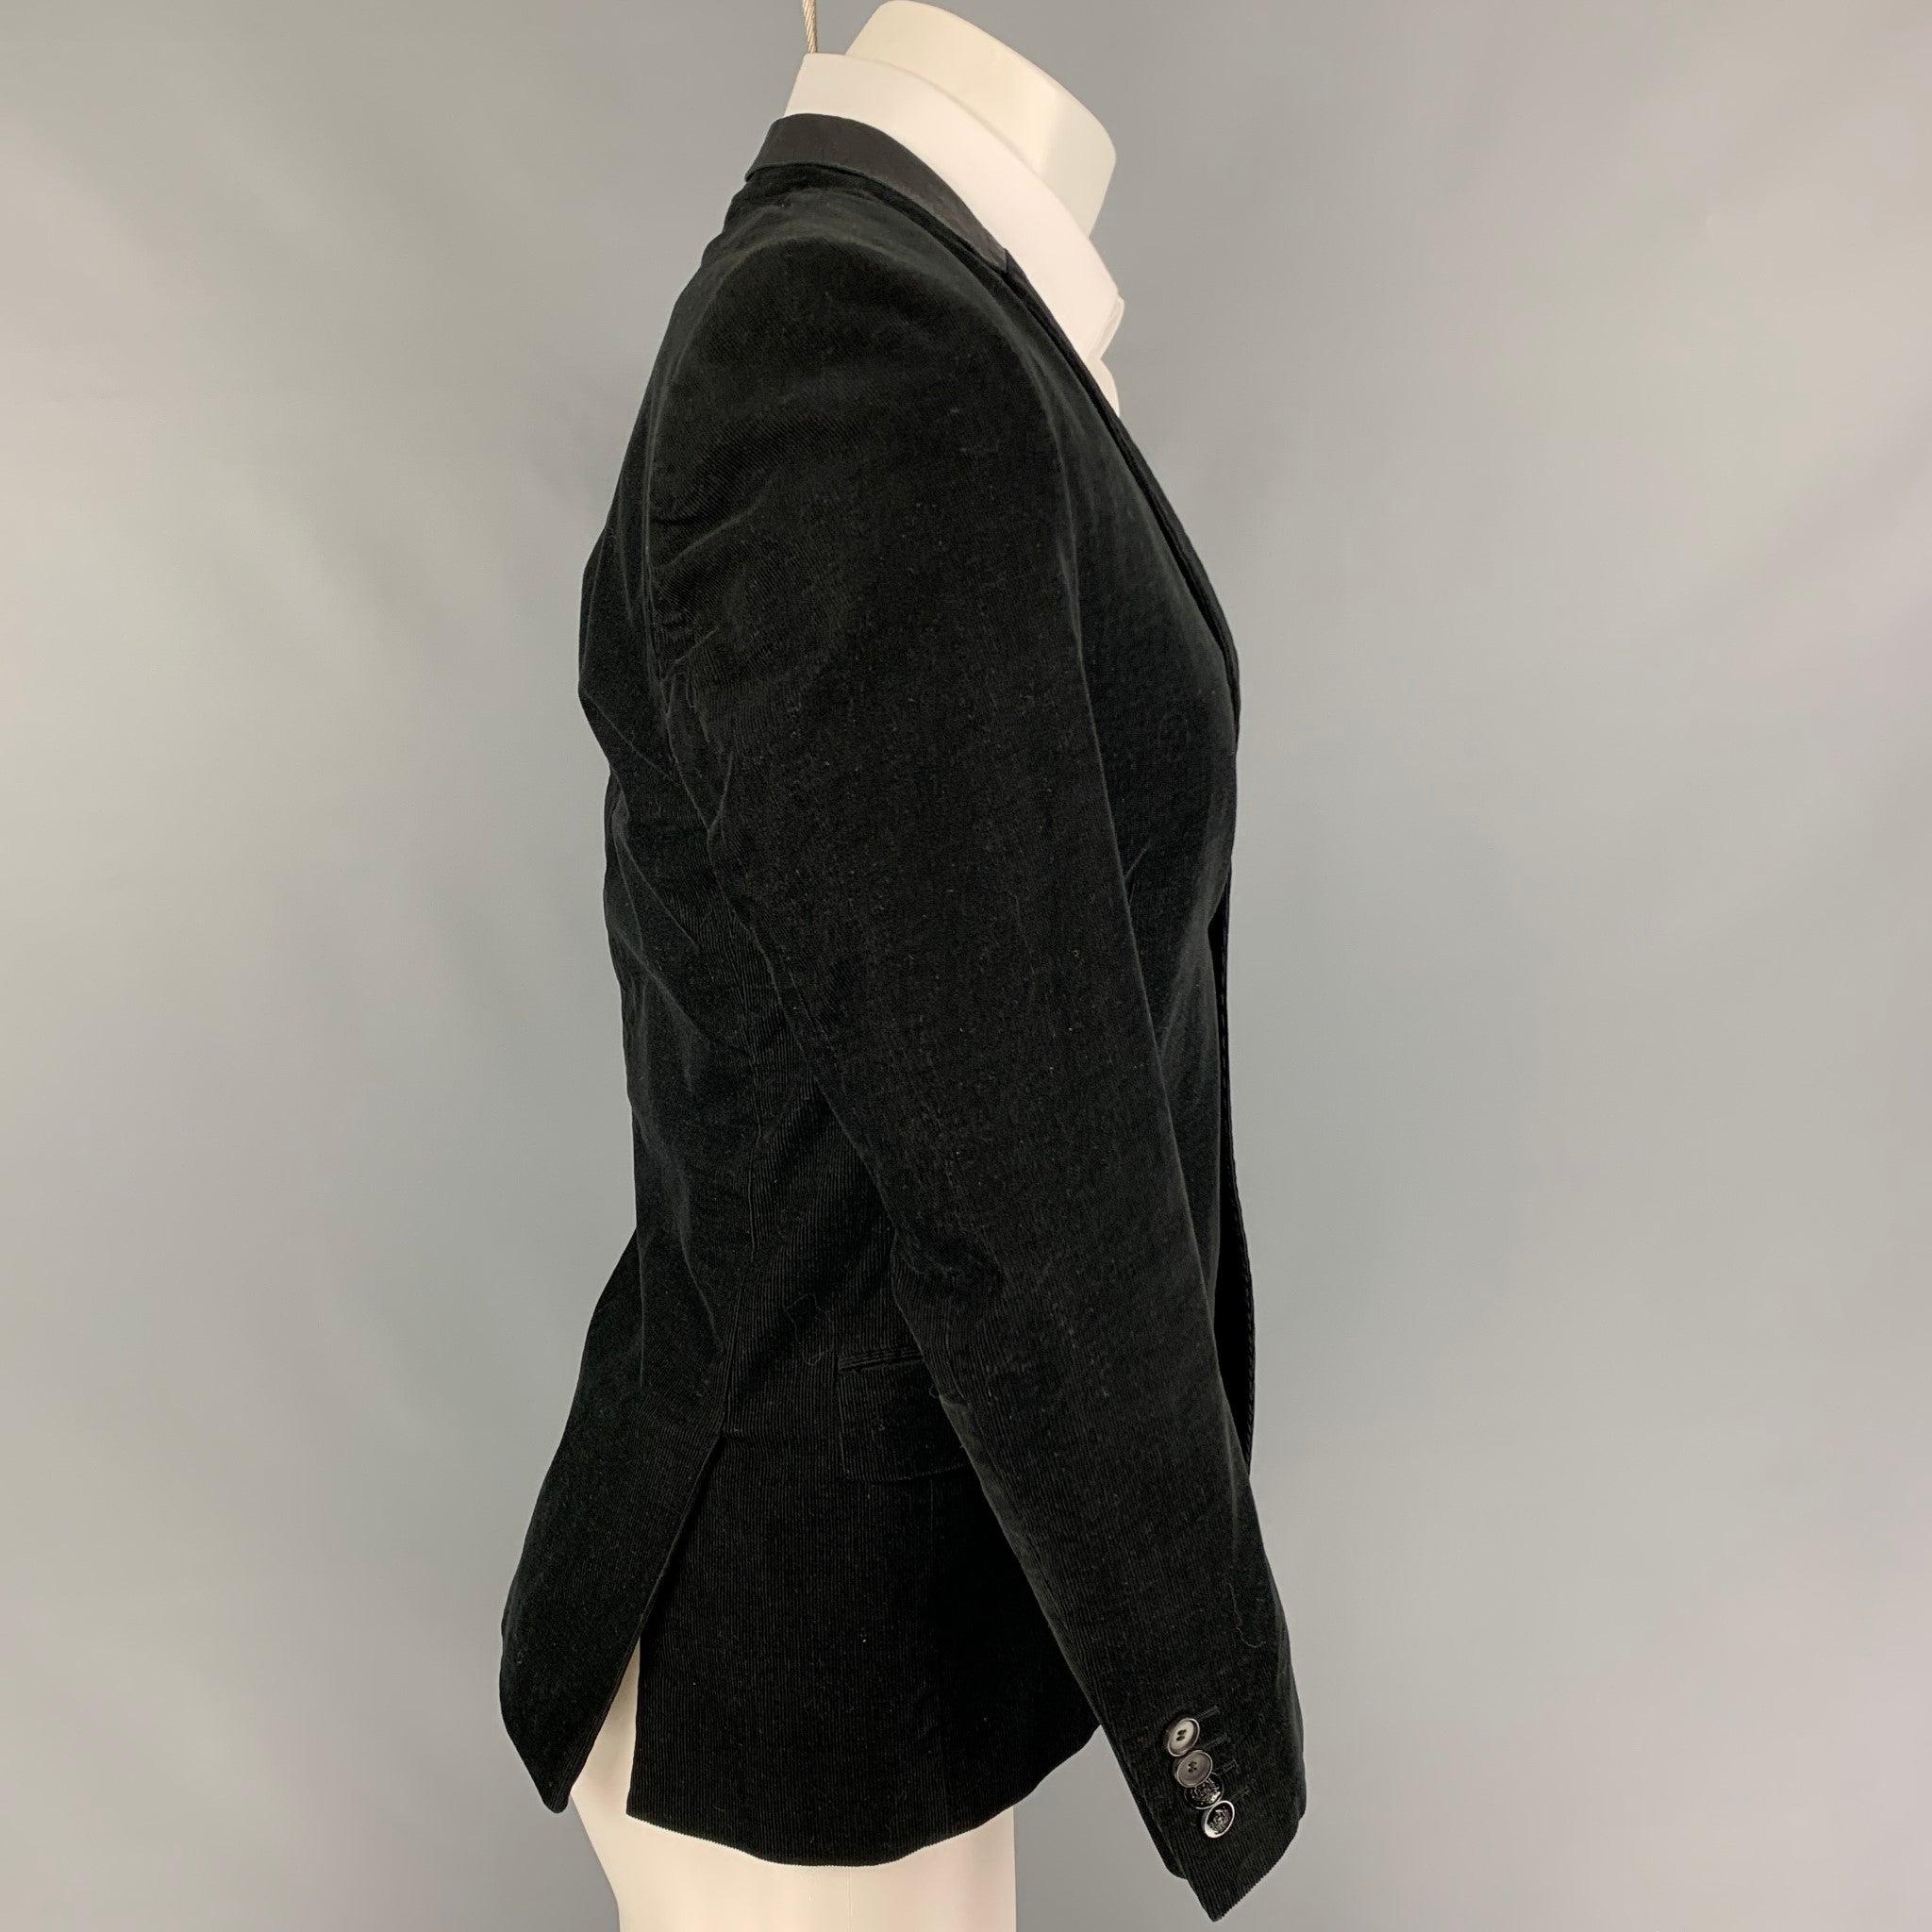 Le manteau de sport THE KOOPLES se présente sous la forme d'un manteau de sport. 
en velours côtelé noir avec une doublure complète, avec un revers à cran, des bordures en cuir, des poches à rabat, une double fente au dos et une fermeture à double